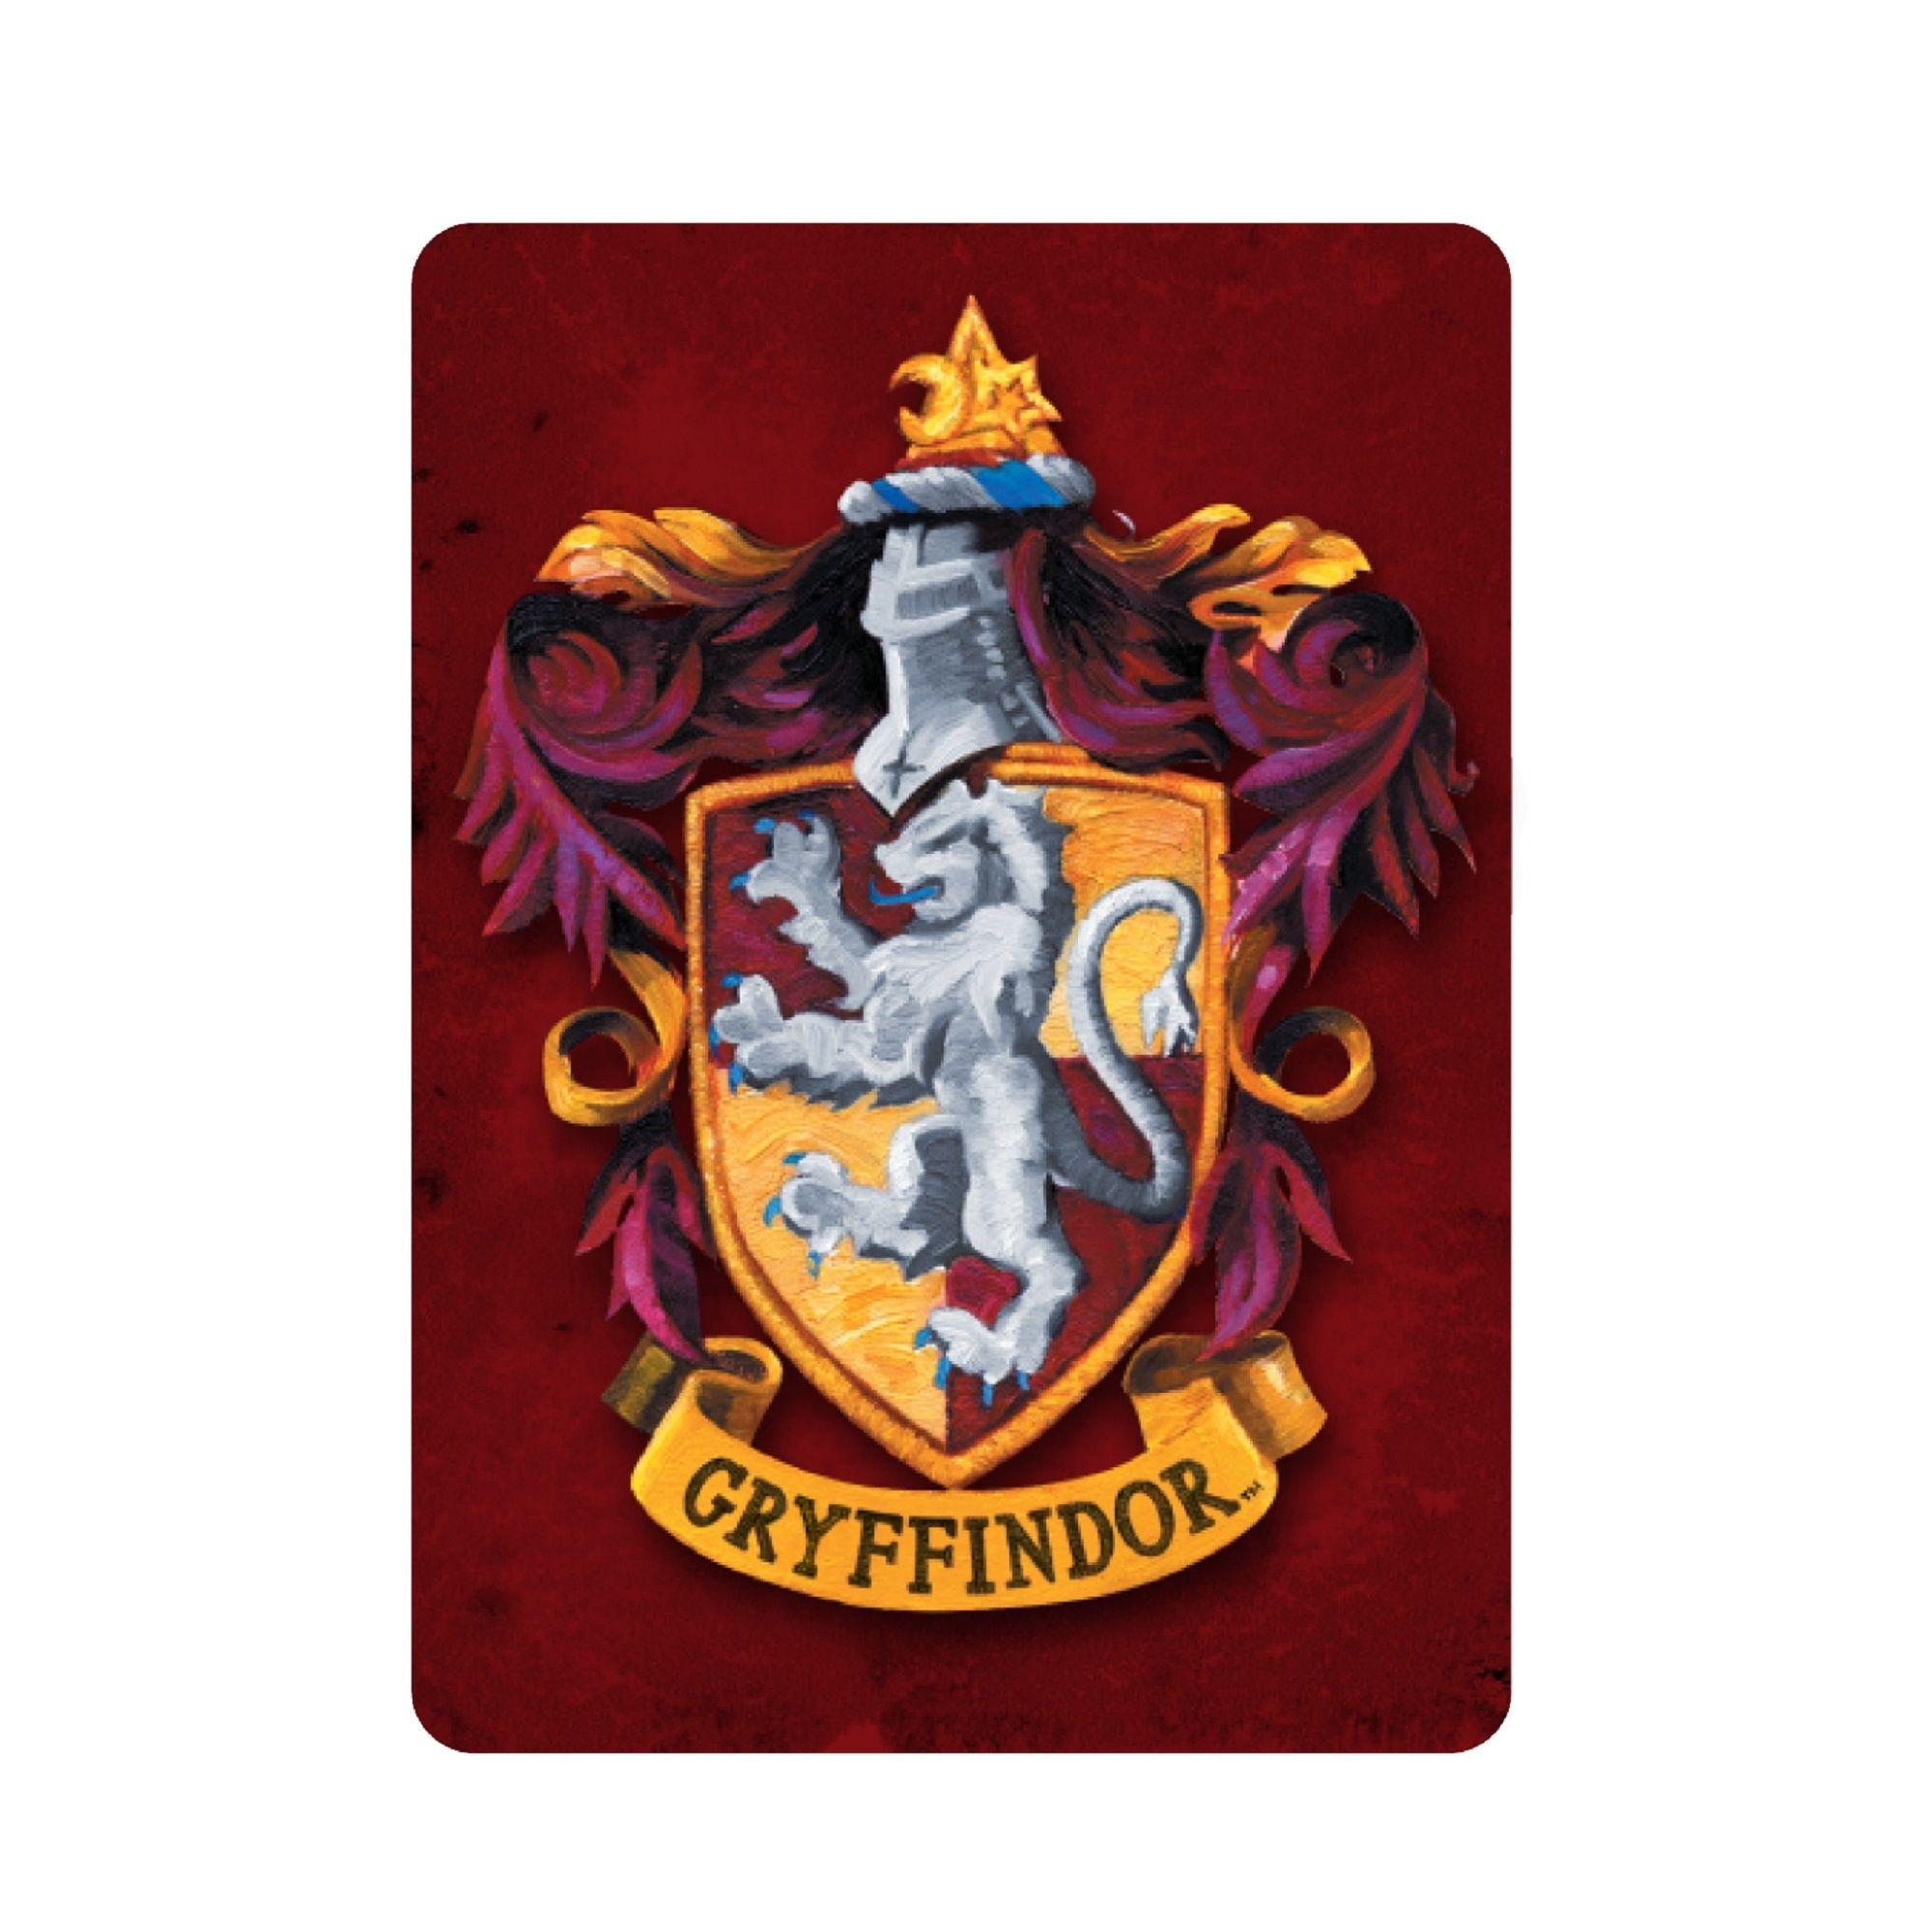 Harry Potter Gryffindor Logo - Harry Potter Gryffindor Crest Metal Magnet - £5.00 for Toys